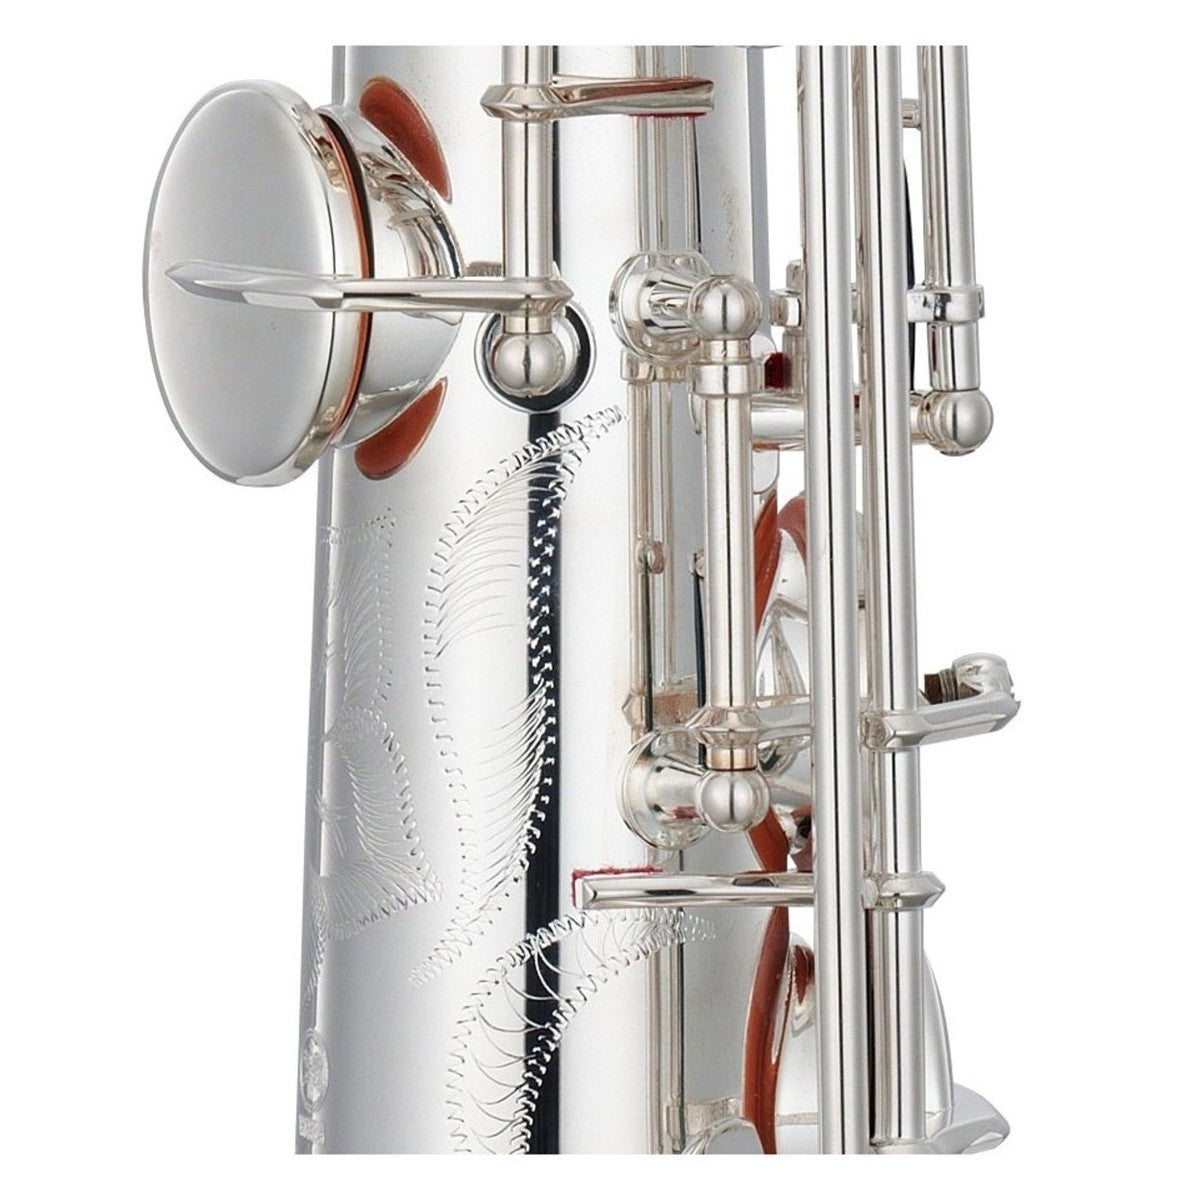 Kèn Saxophone Soprano Yamaha YSS-82ZRS - Việt Music